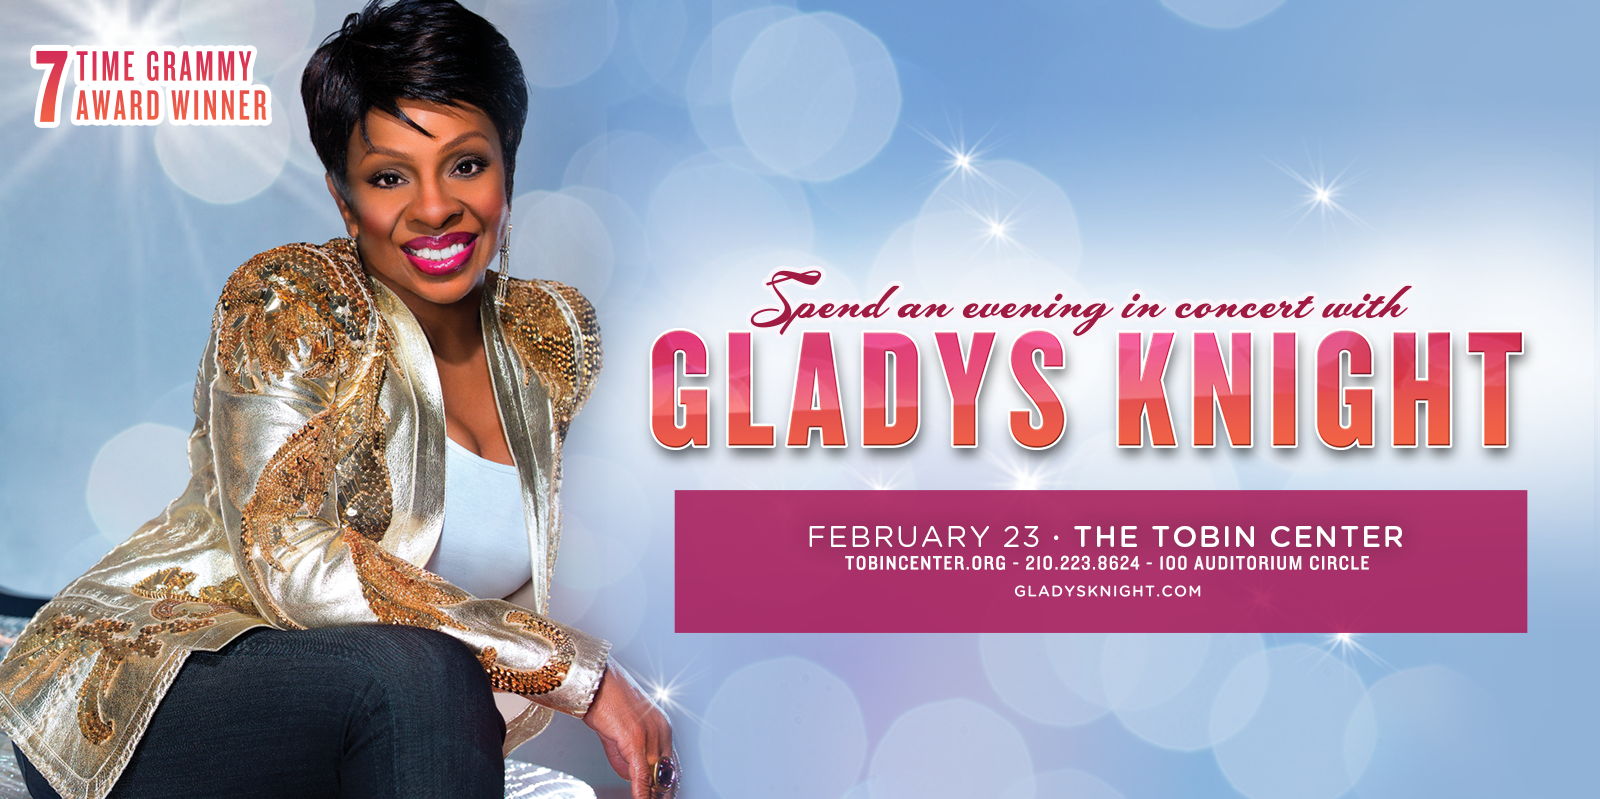 Gladys Knight promotional image